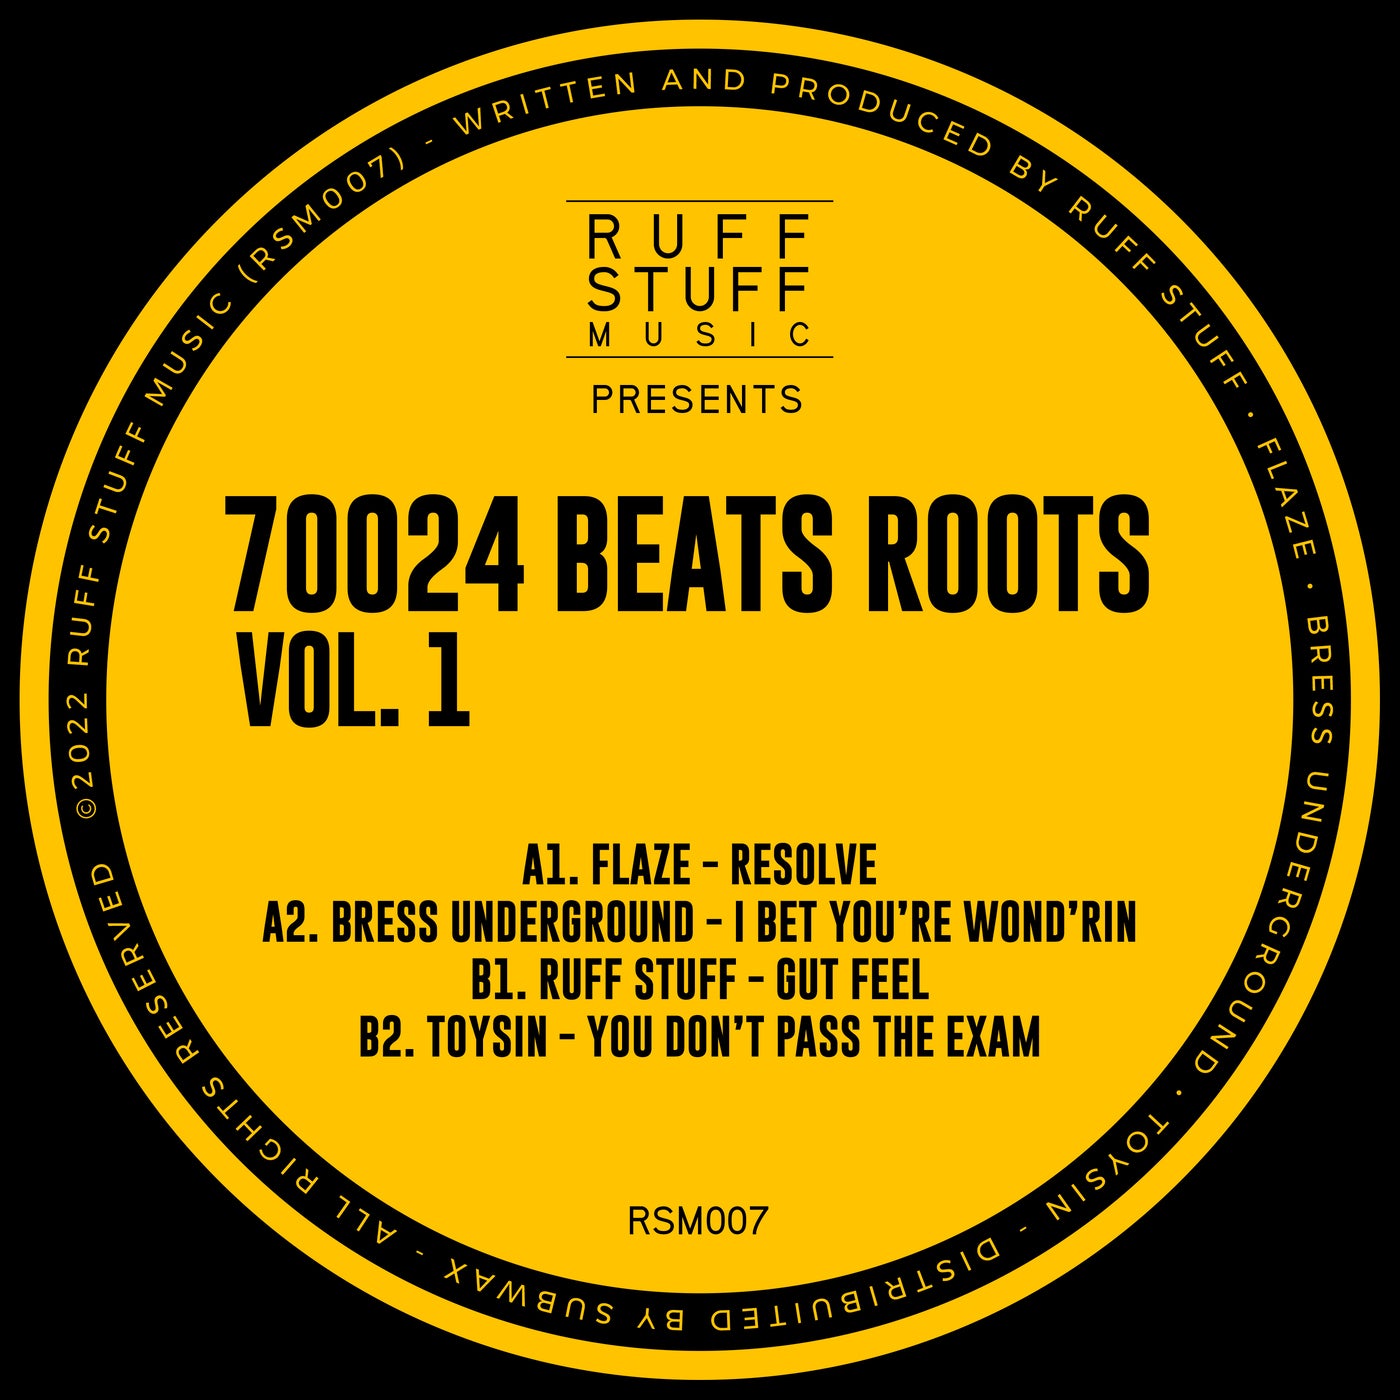 70024 Beats Roots, Vol. 1